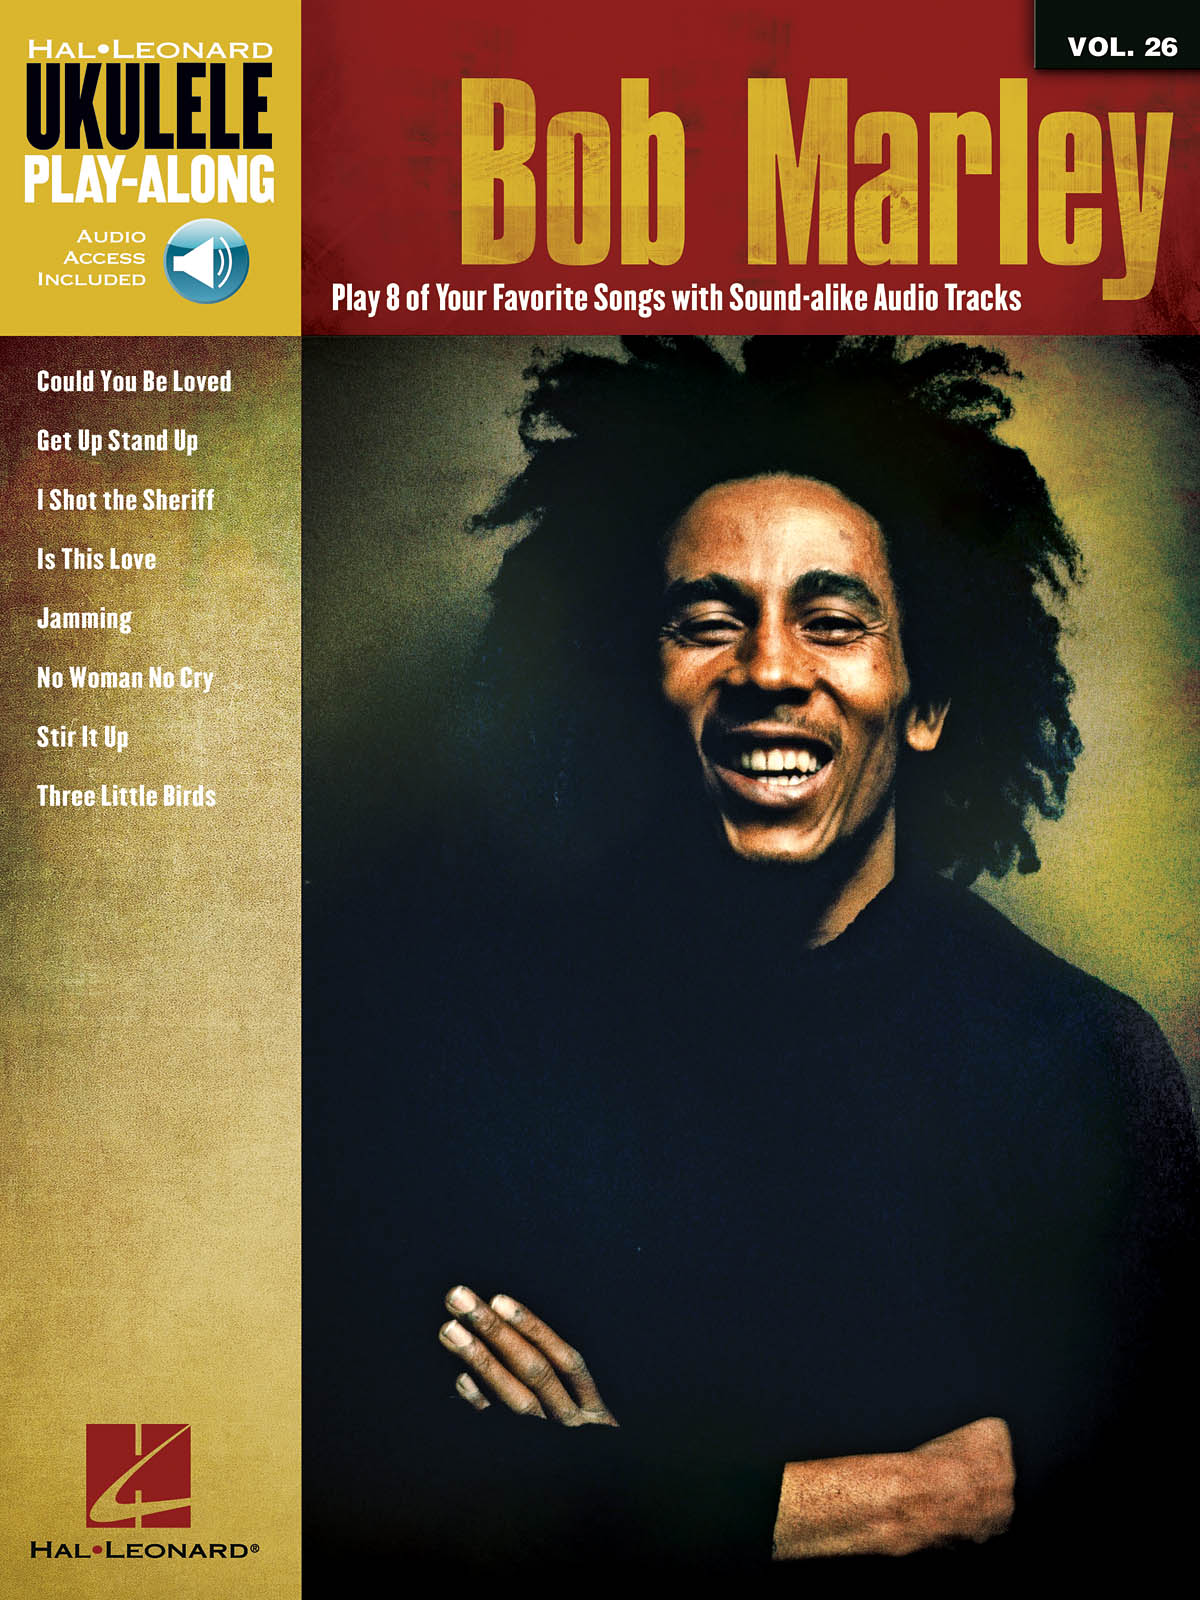 Ukulele Play-Along Volume 26: Bob Marley